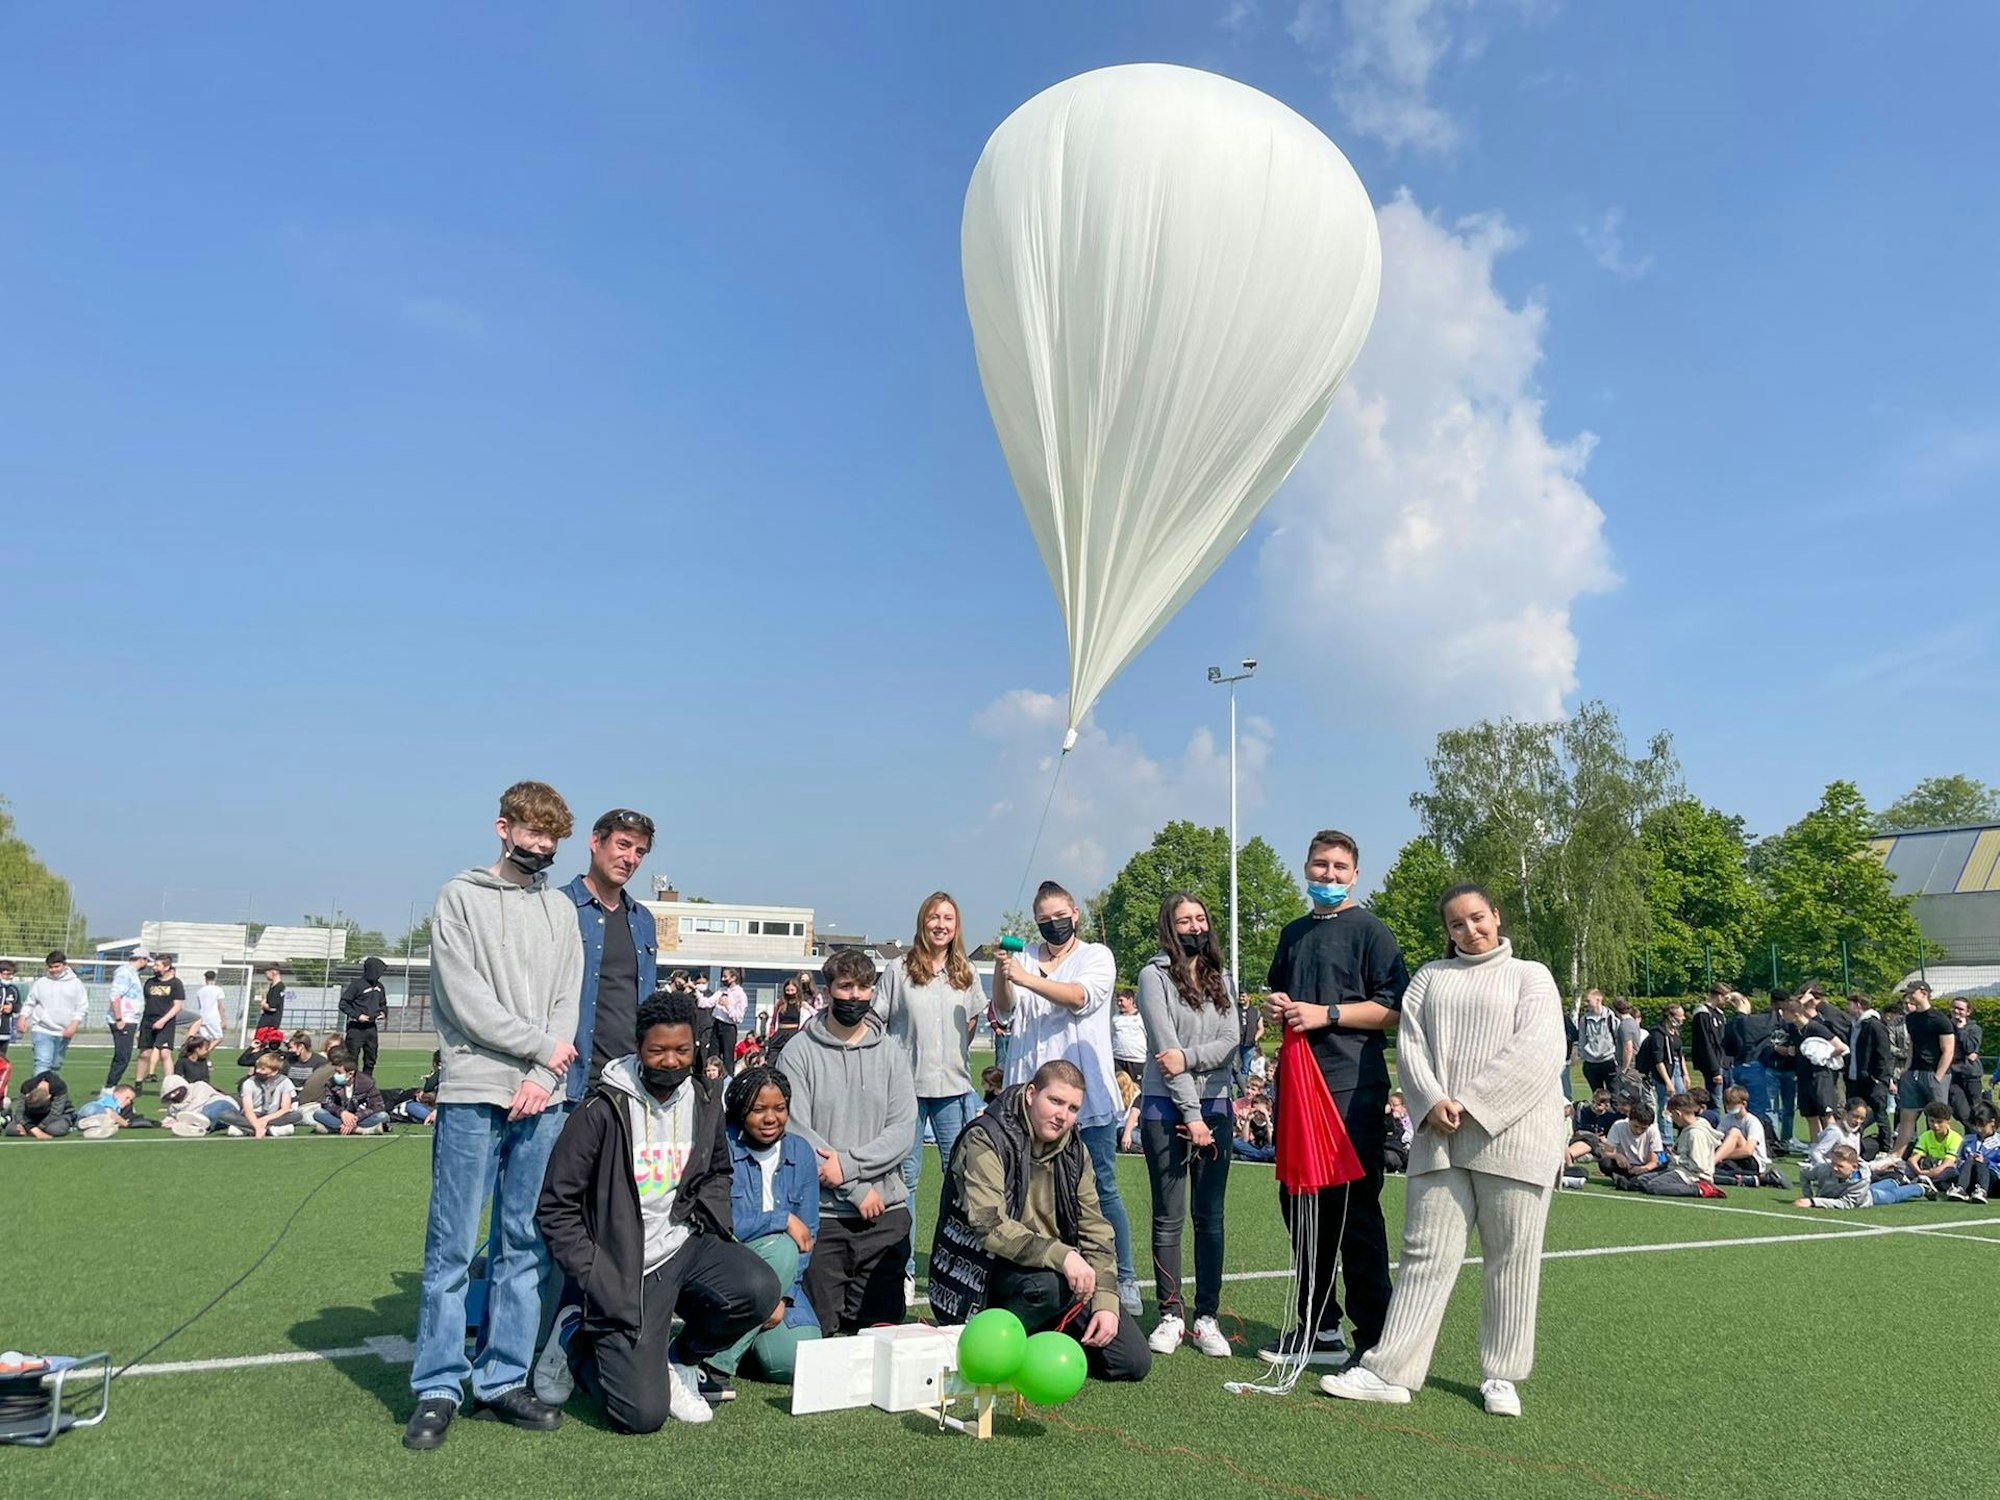 20220506-nip-ber-gesamtschule-helimballon-stratosphaere-4